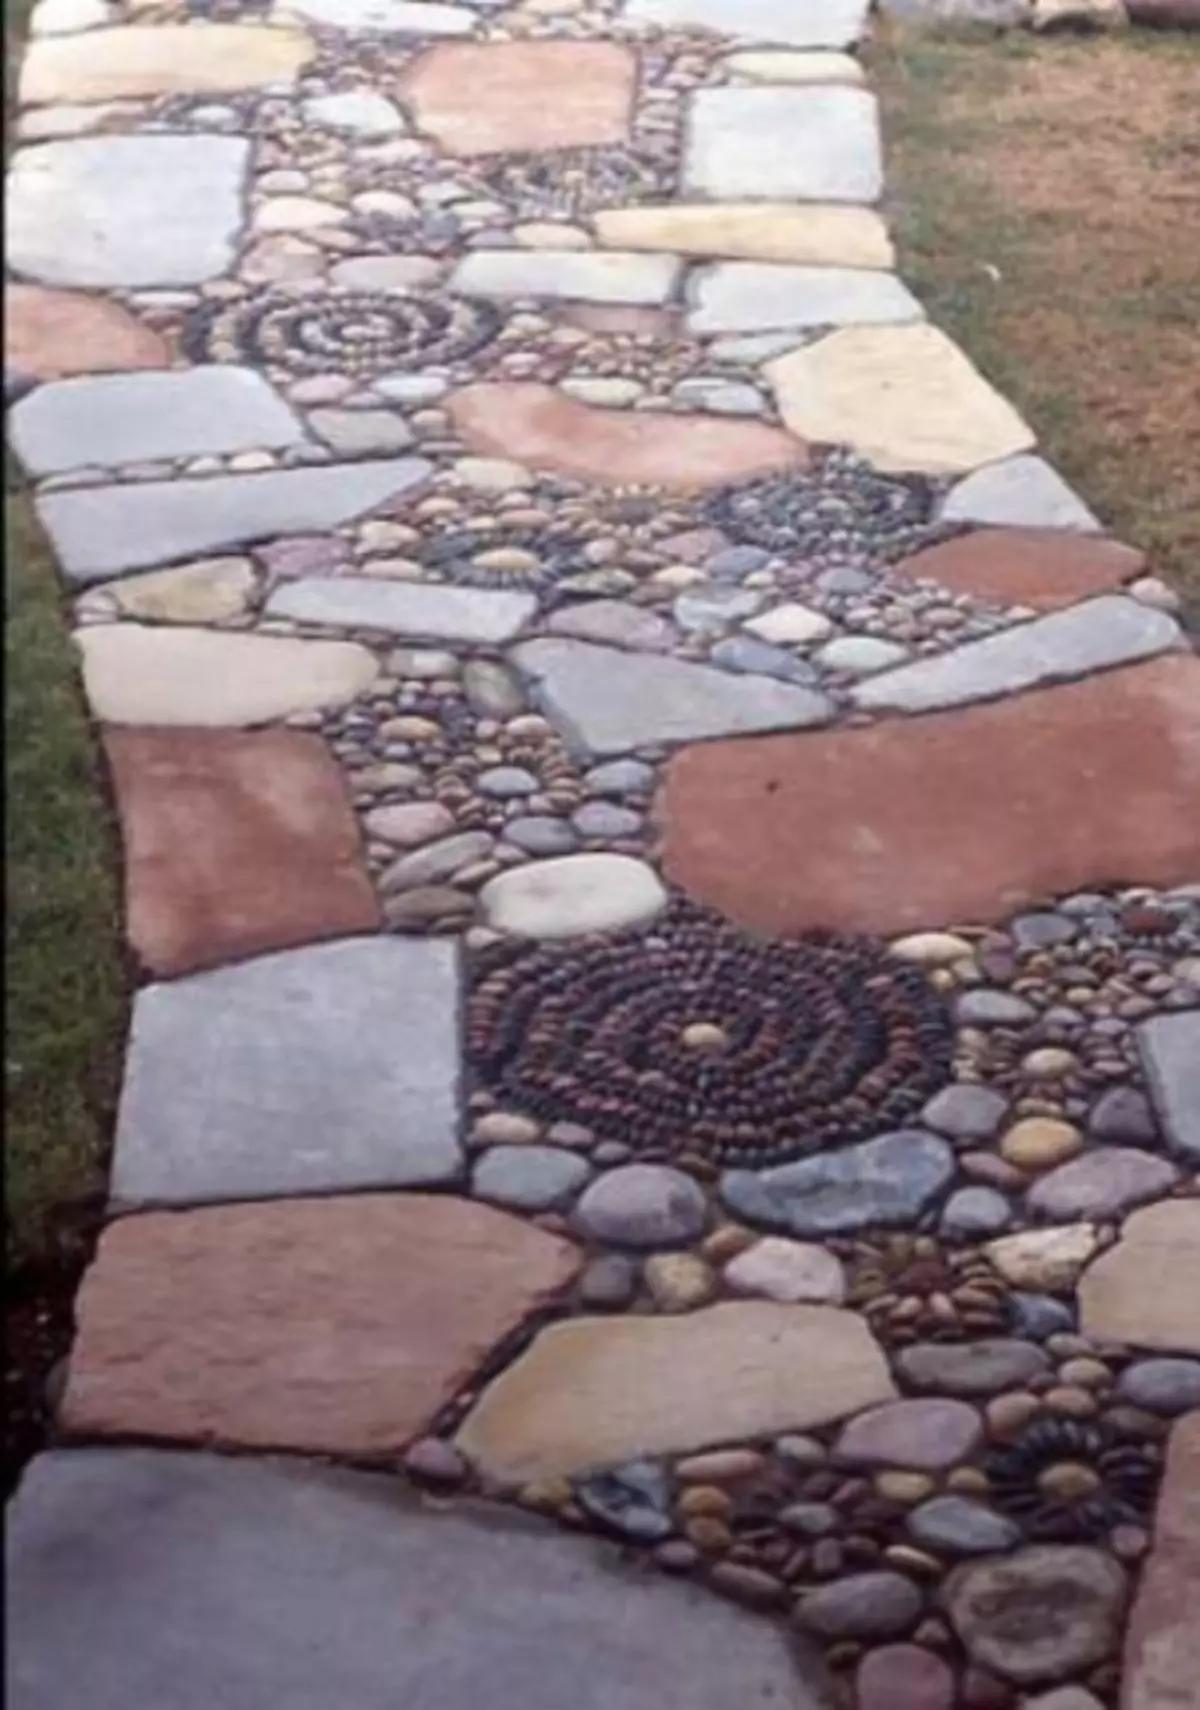 Stone Garden Tracks: Fan beton, bakstien, kiezels, grind, grint, tegels en net allinich (40 foto's)